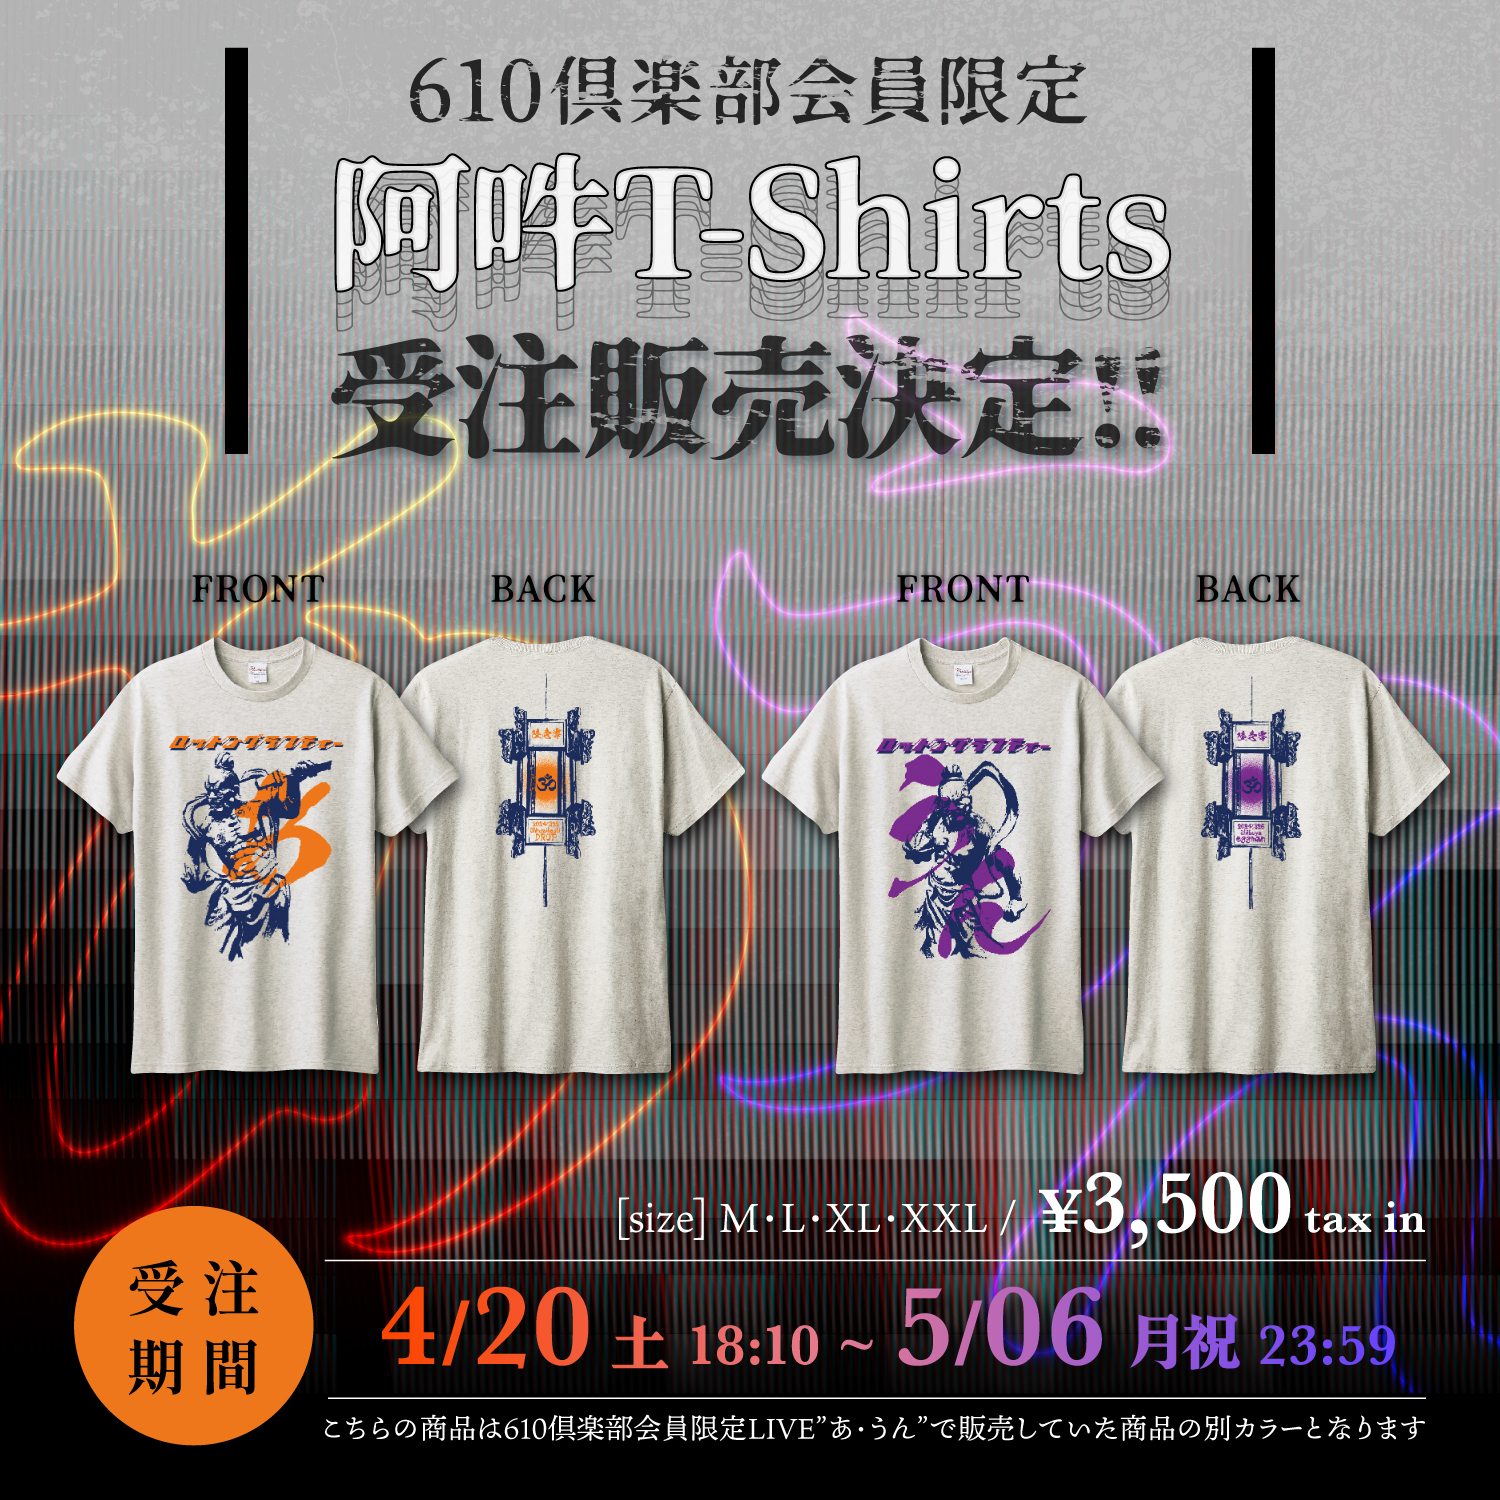 【610倶楽部 会員限定】阿吽T-shirtsの販売開始！